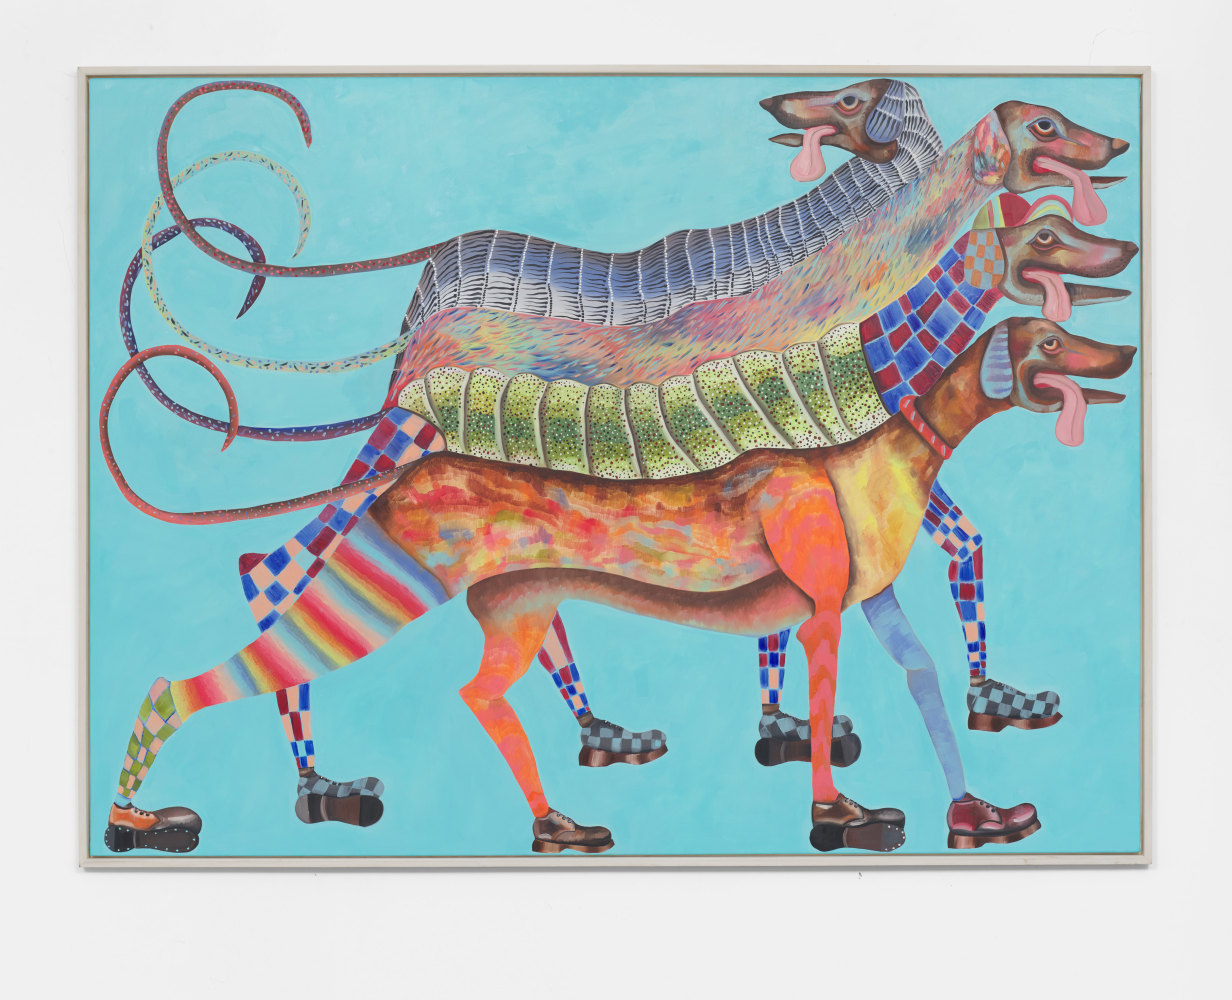 Krystof Strejc
Dog, 2021
Oil on canvas
90.55h x 66.93w in
230h x 170w cm